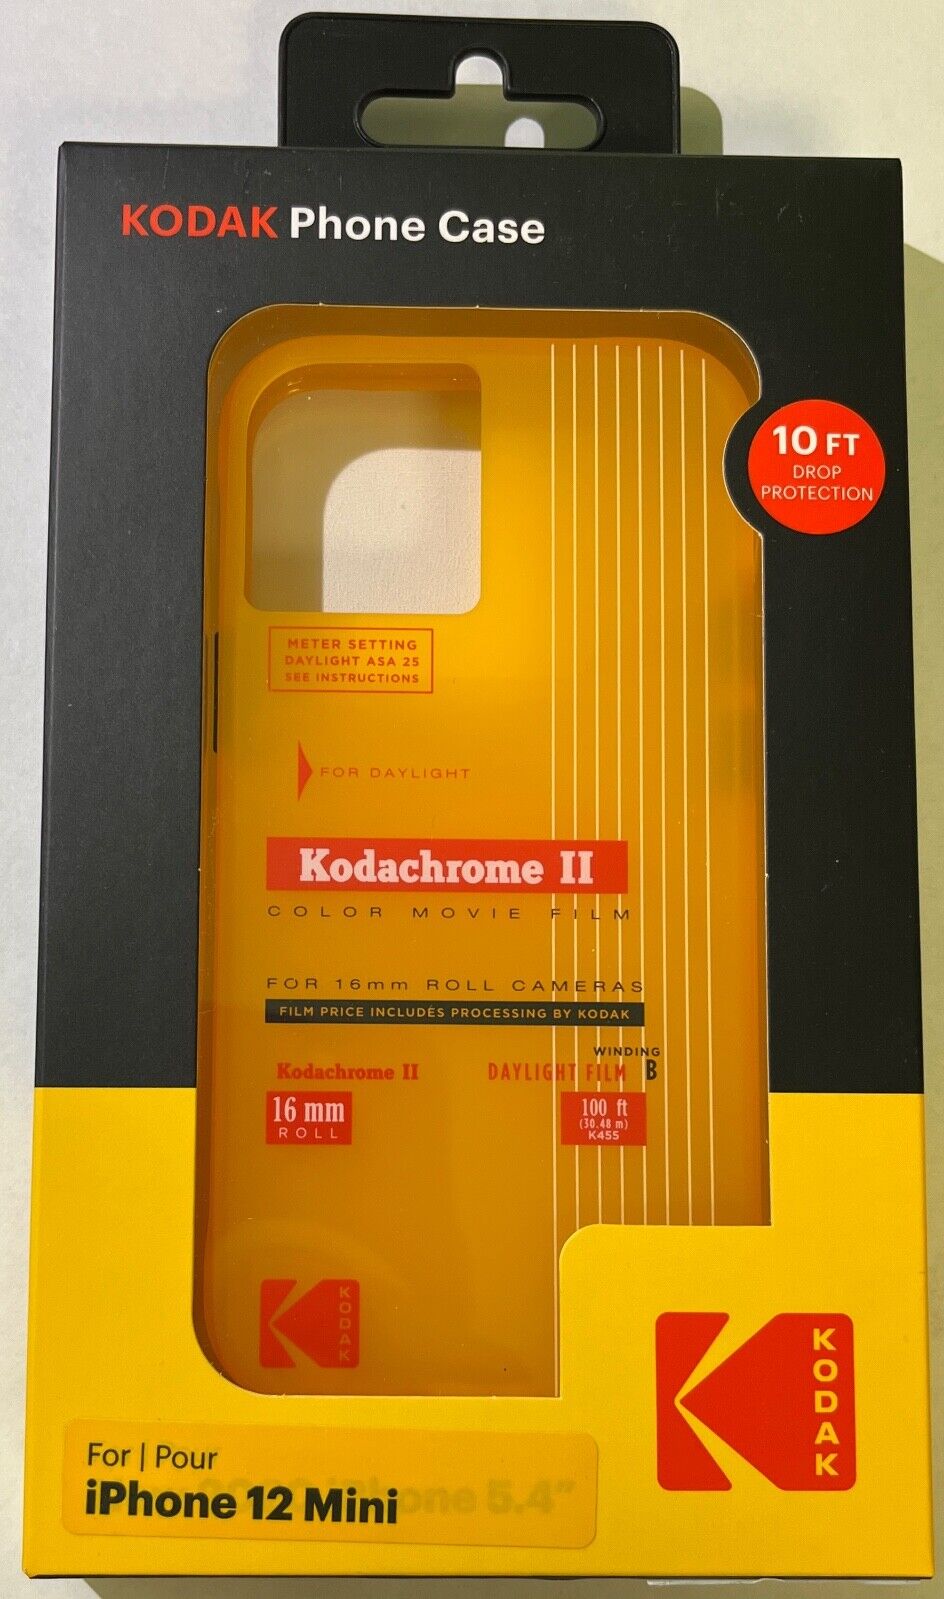 NEW Kodak Vintage Kodachrome Film Theme Case for iPhone 12 Mini (5.4") - YELLOW